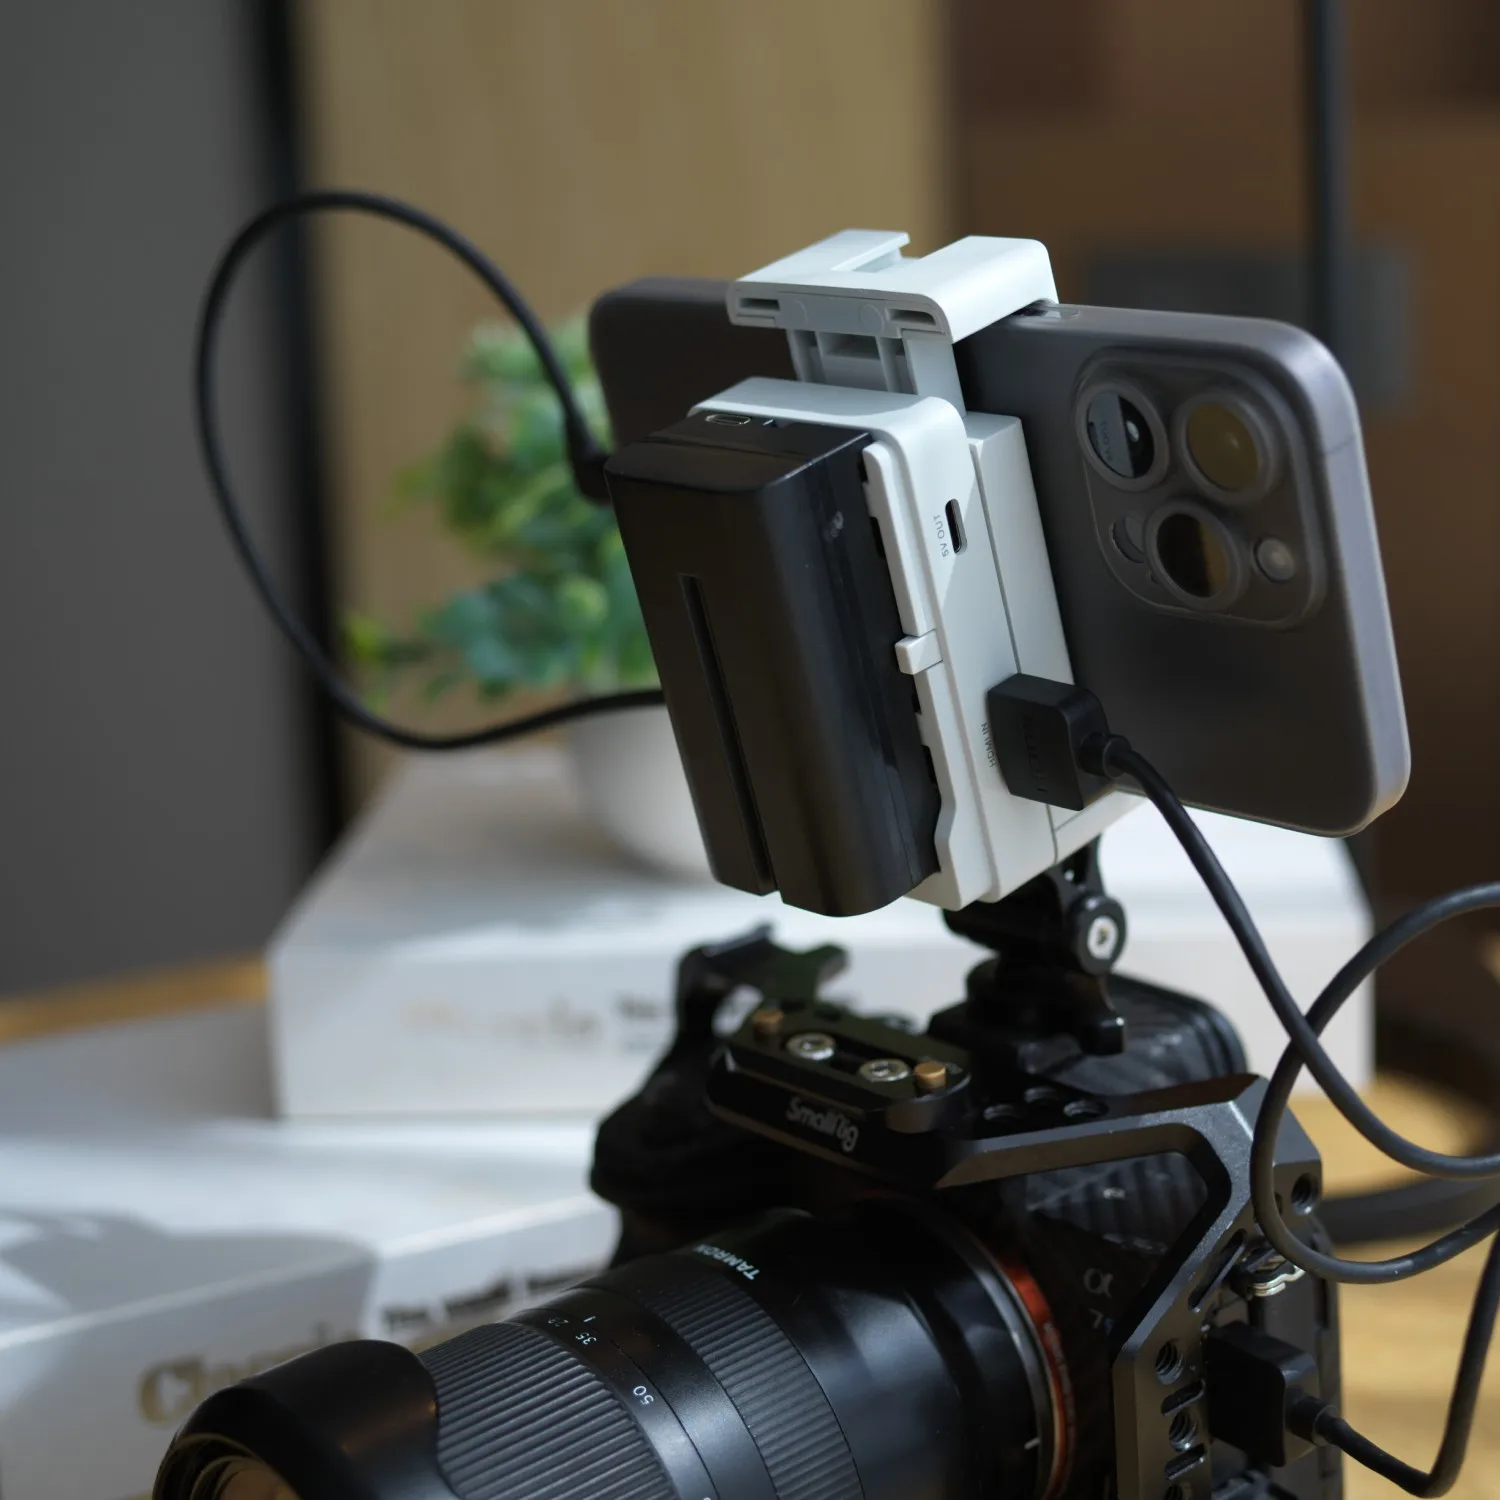 USB-видеопередатчик для планшетов и камер